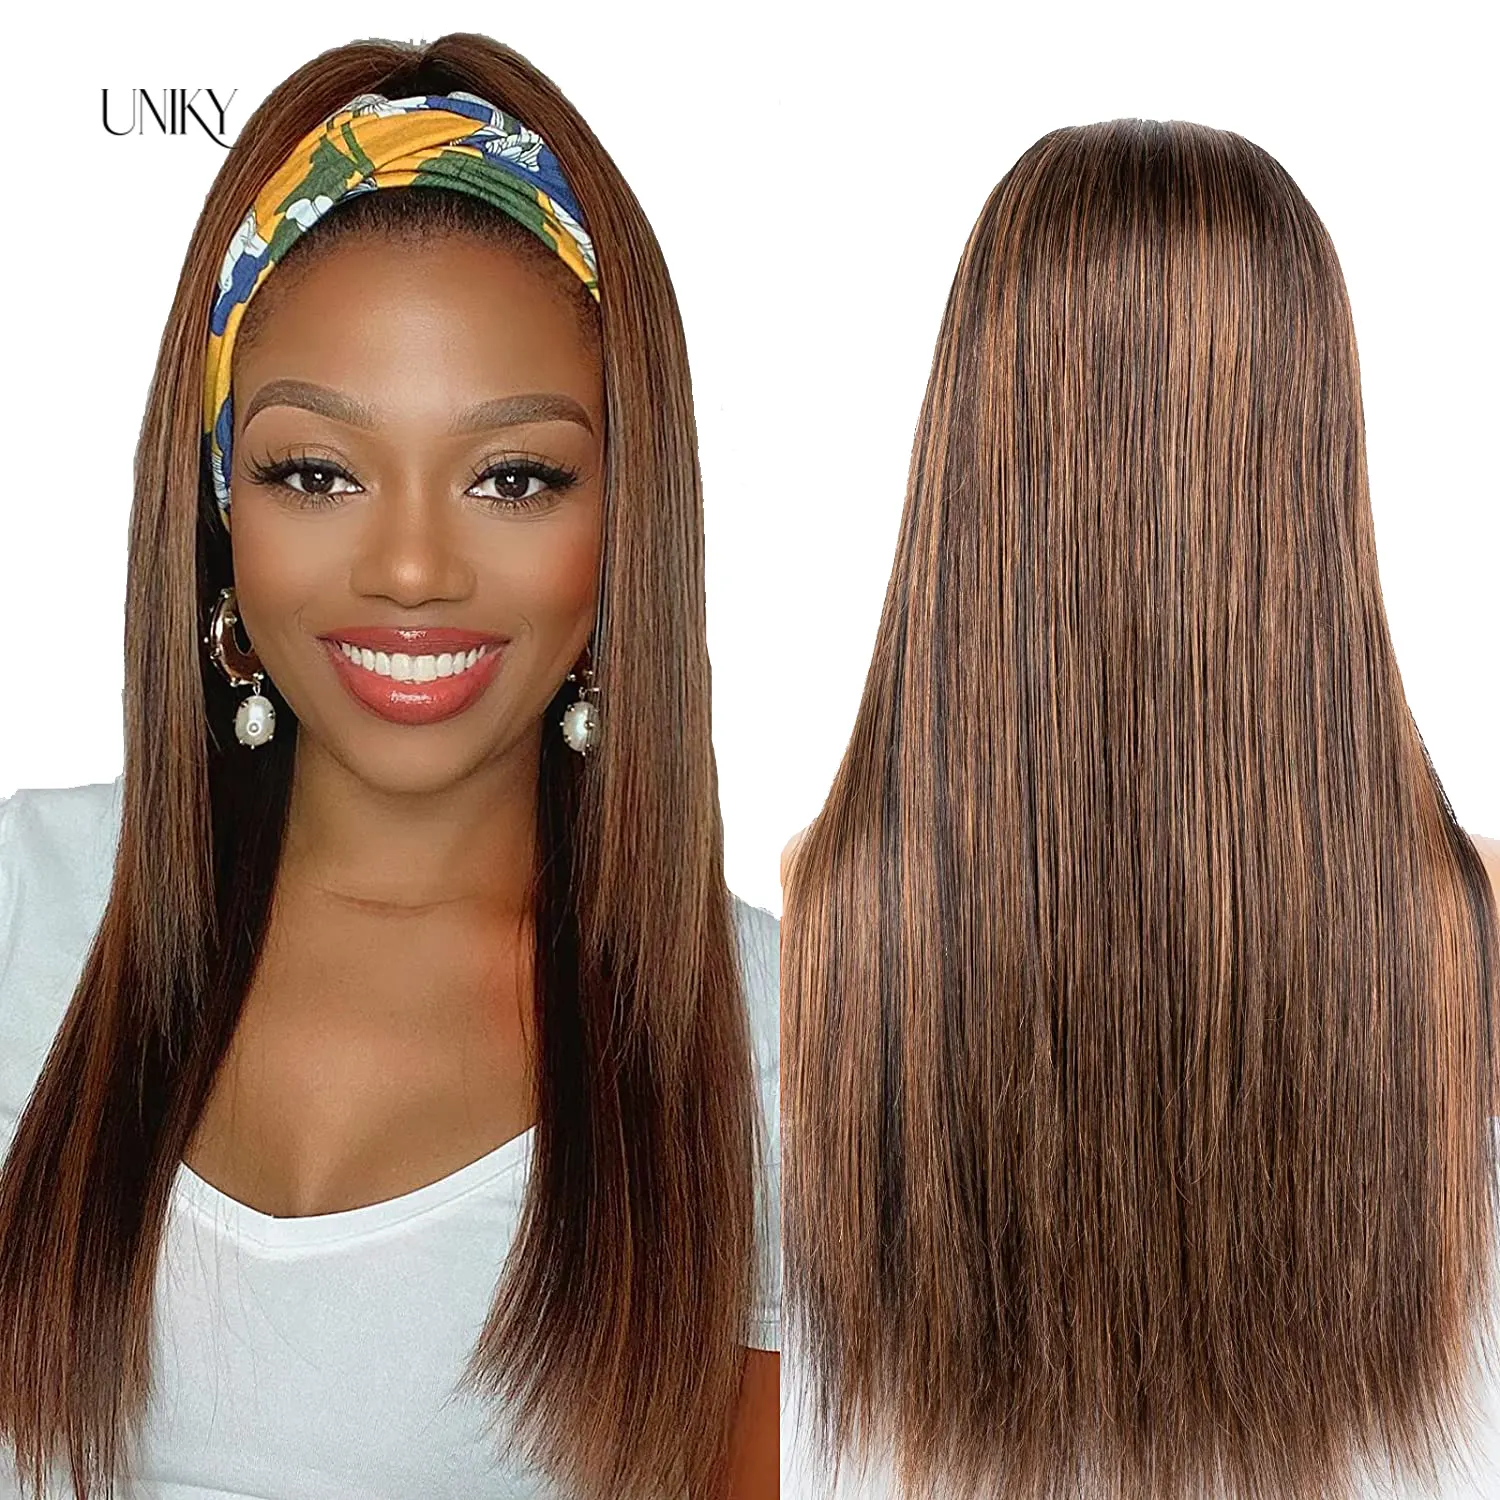 Uniky хайлайтер головная повязка человеческие волосы парики прямые малайзийские волосы парики для черных женщин Омбре цветные человеческие волосы парики Remy